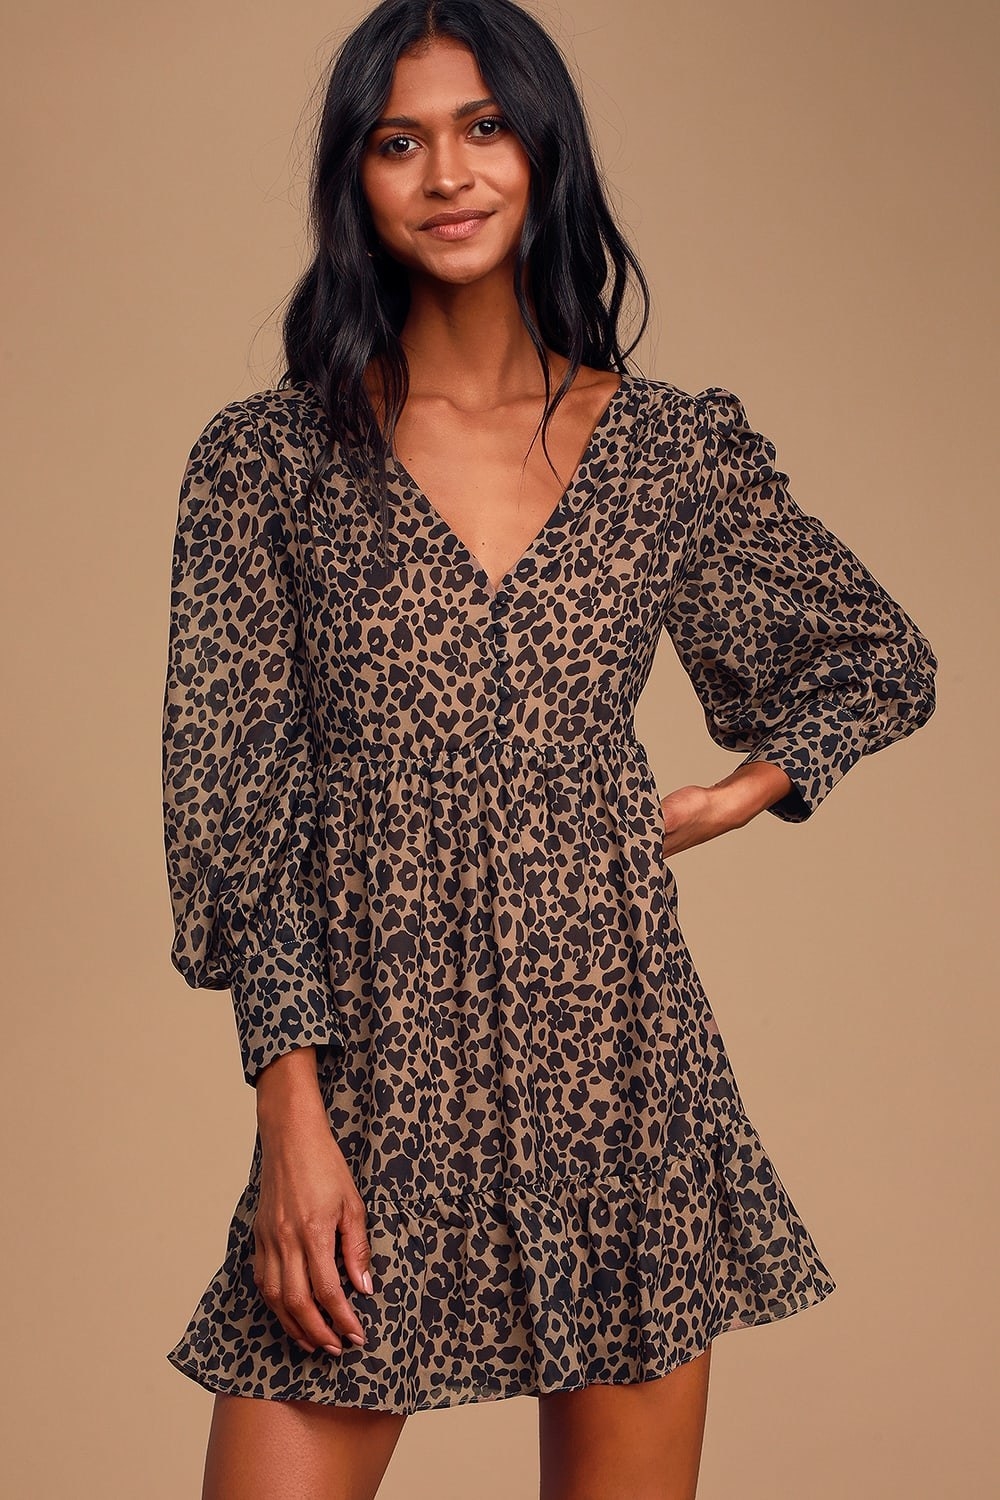 A leopard print babydoll dress